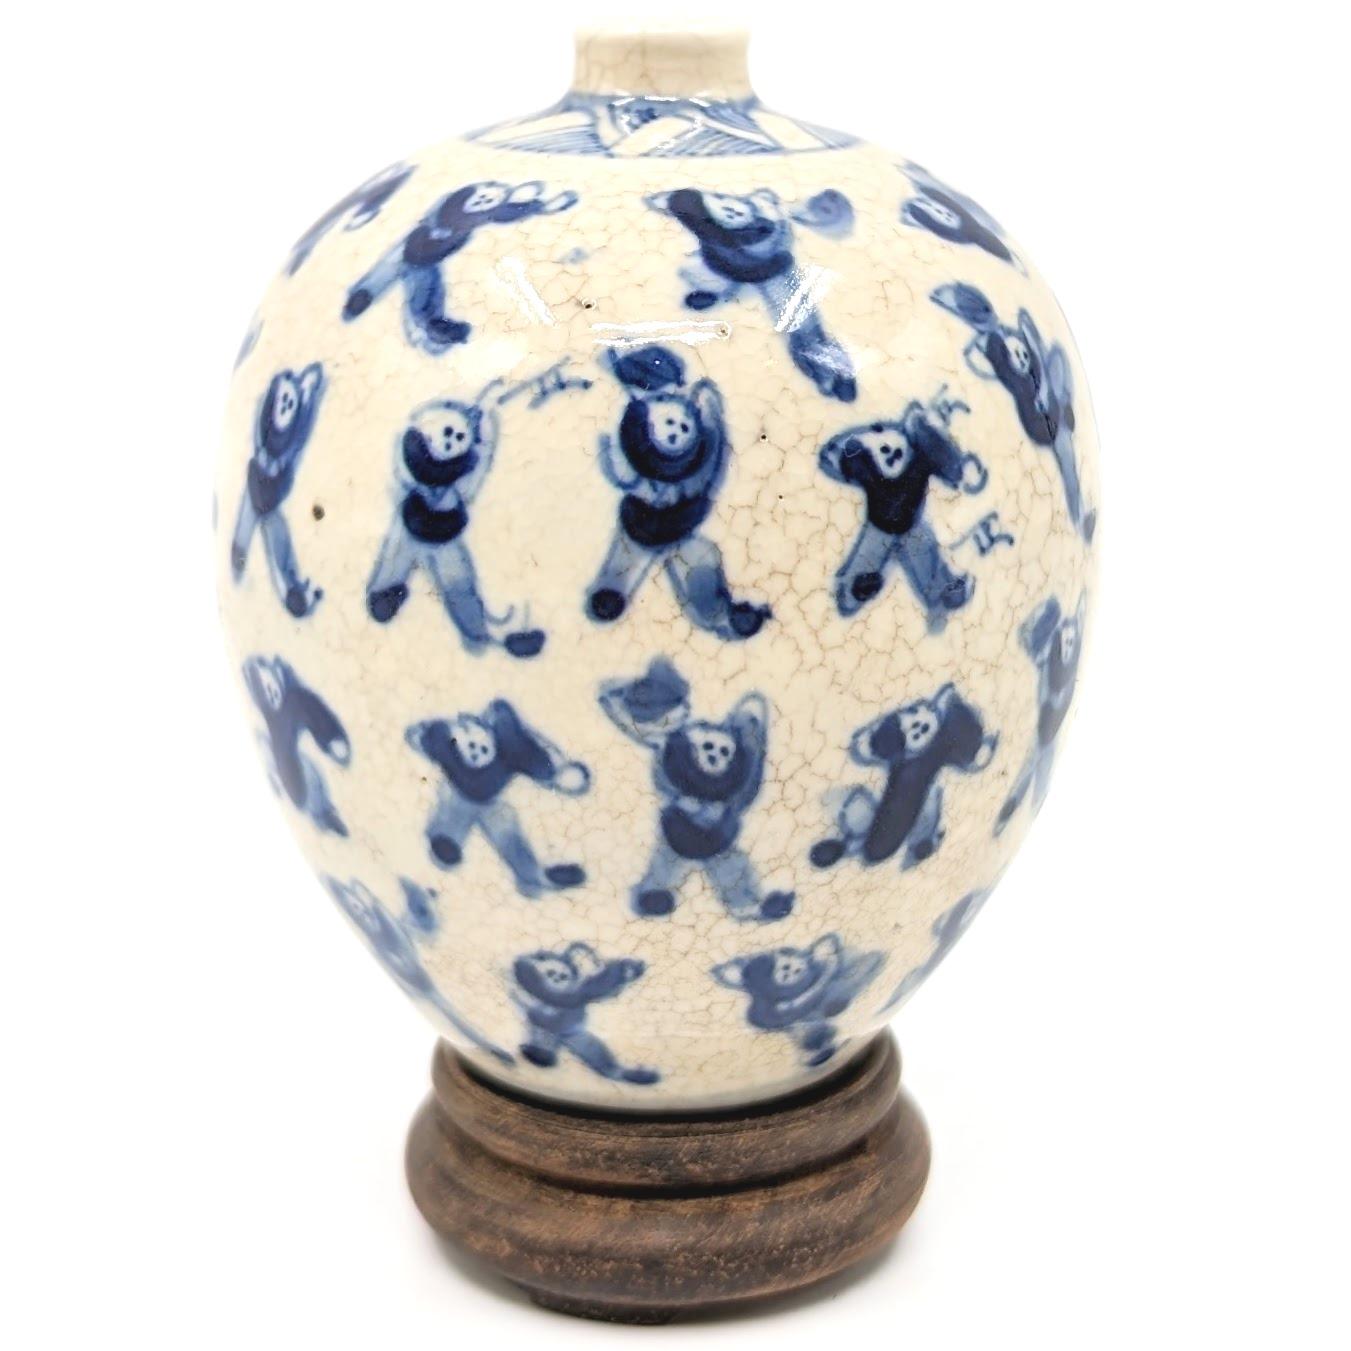 Ancienne bouteille à priser en porcelaine chinoise de forme ovoïde, peinte en bleu sous glaçure et en blanc sur le thème des 